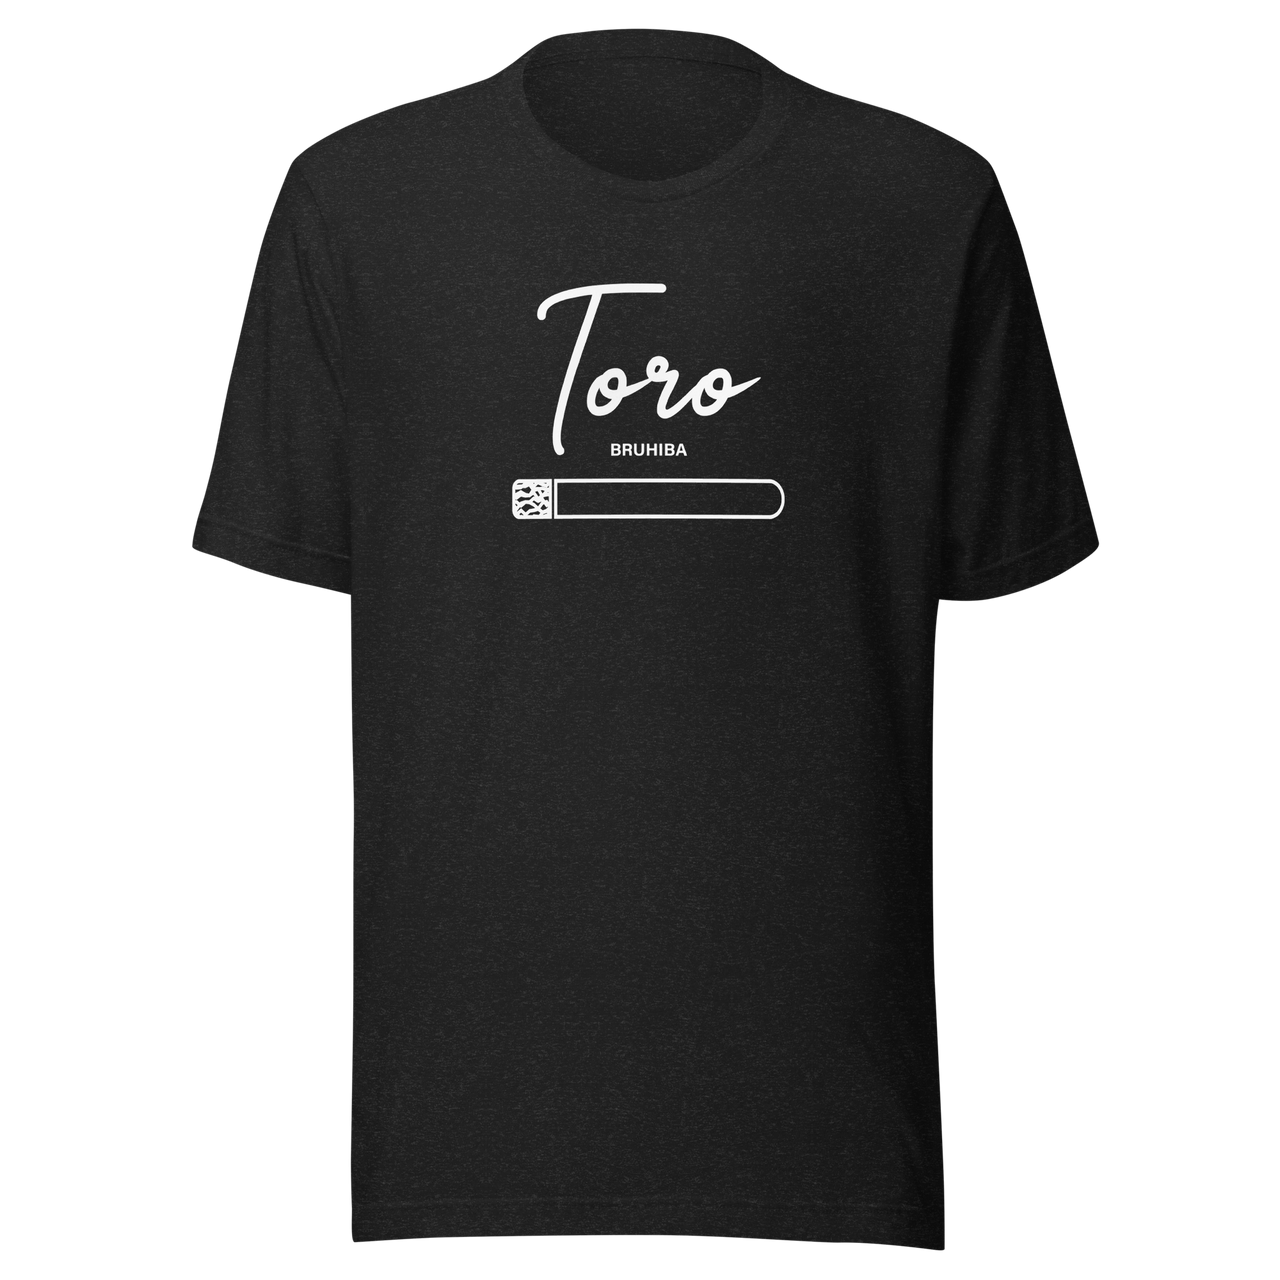 BRUHIBA "Toro" Cigar T-Shirt